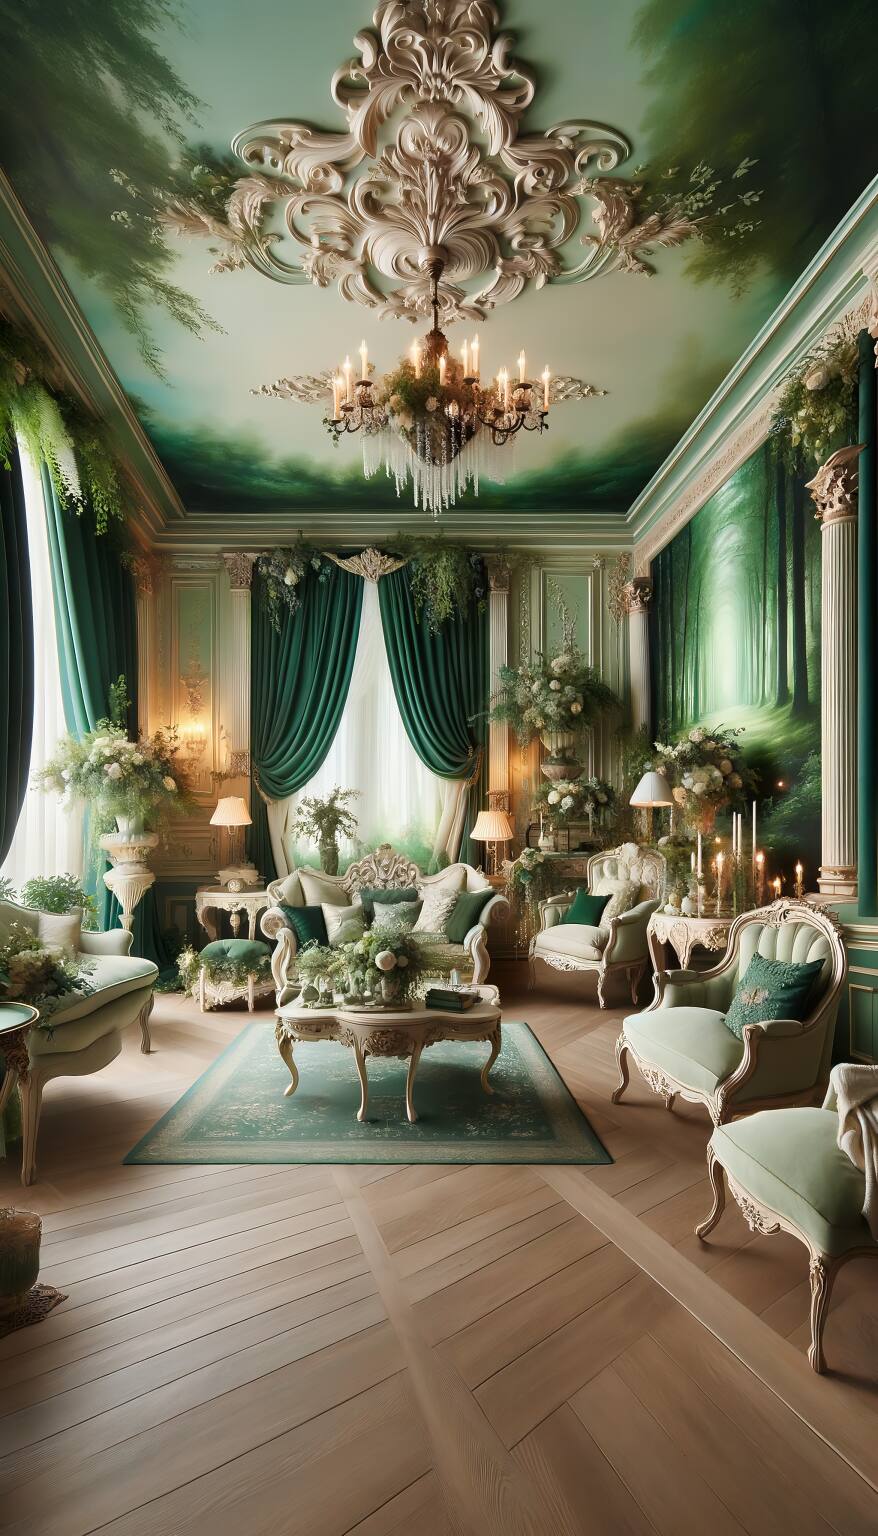 Entdecken Sie Die Ruhe Dieses Romantischen Wohnzimmers In Smaragd Und Creme. Elegante Möbel Vor Einem Hintergrund In Ruhigen Smaragdtönen Schaffen Eine Friedliche Oase Der Liebe Und Entspannung.